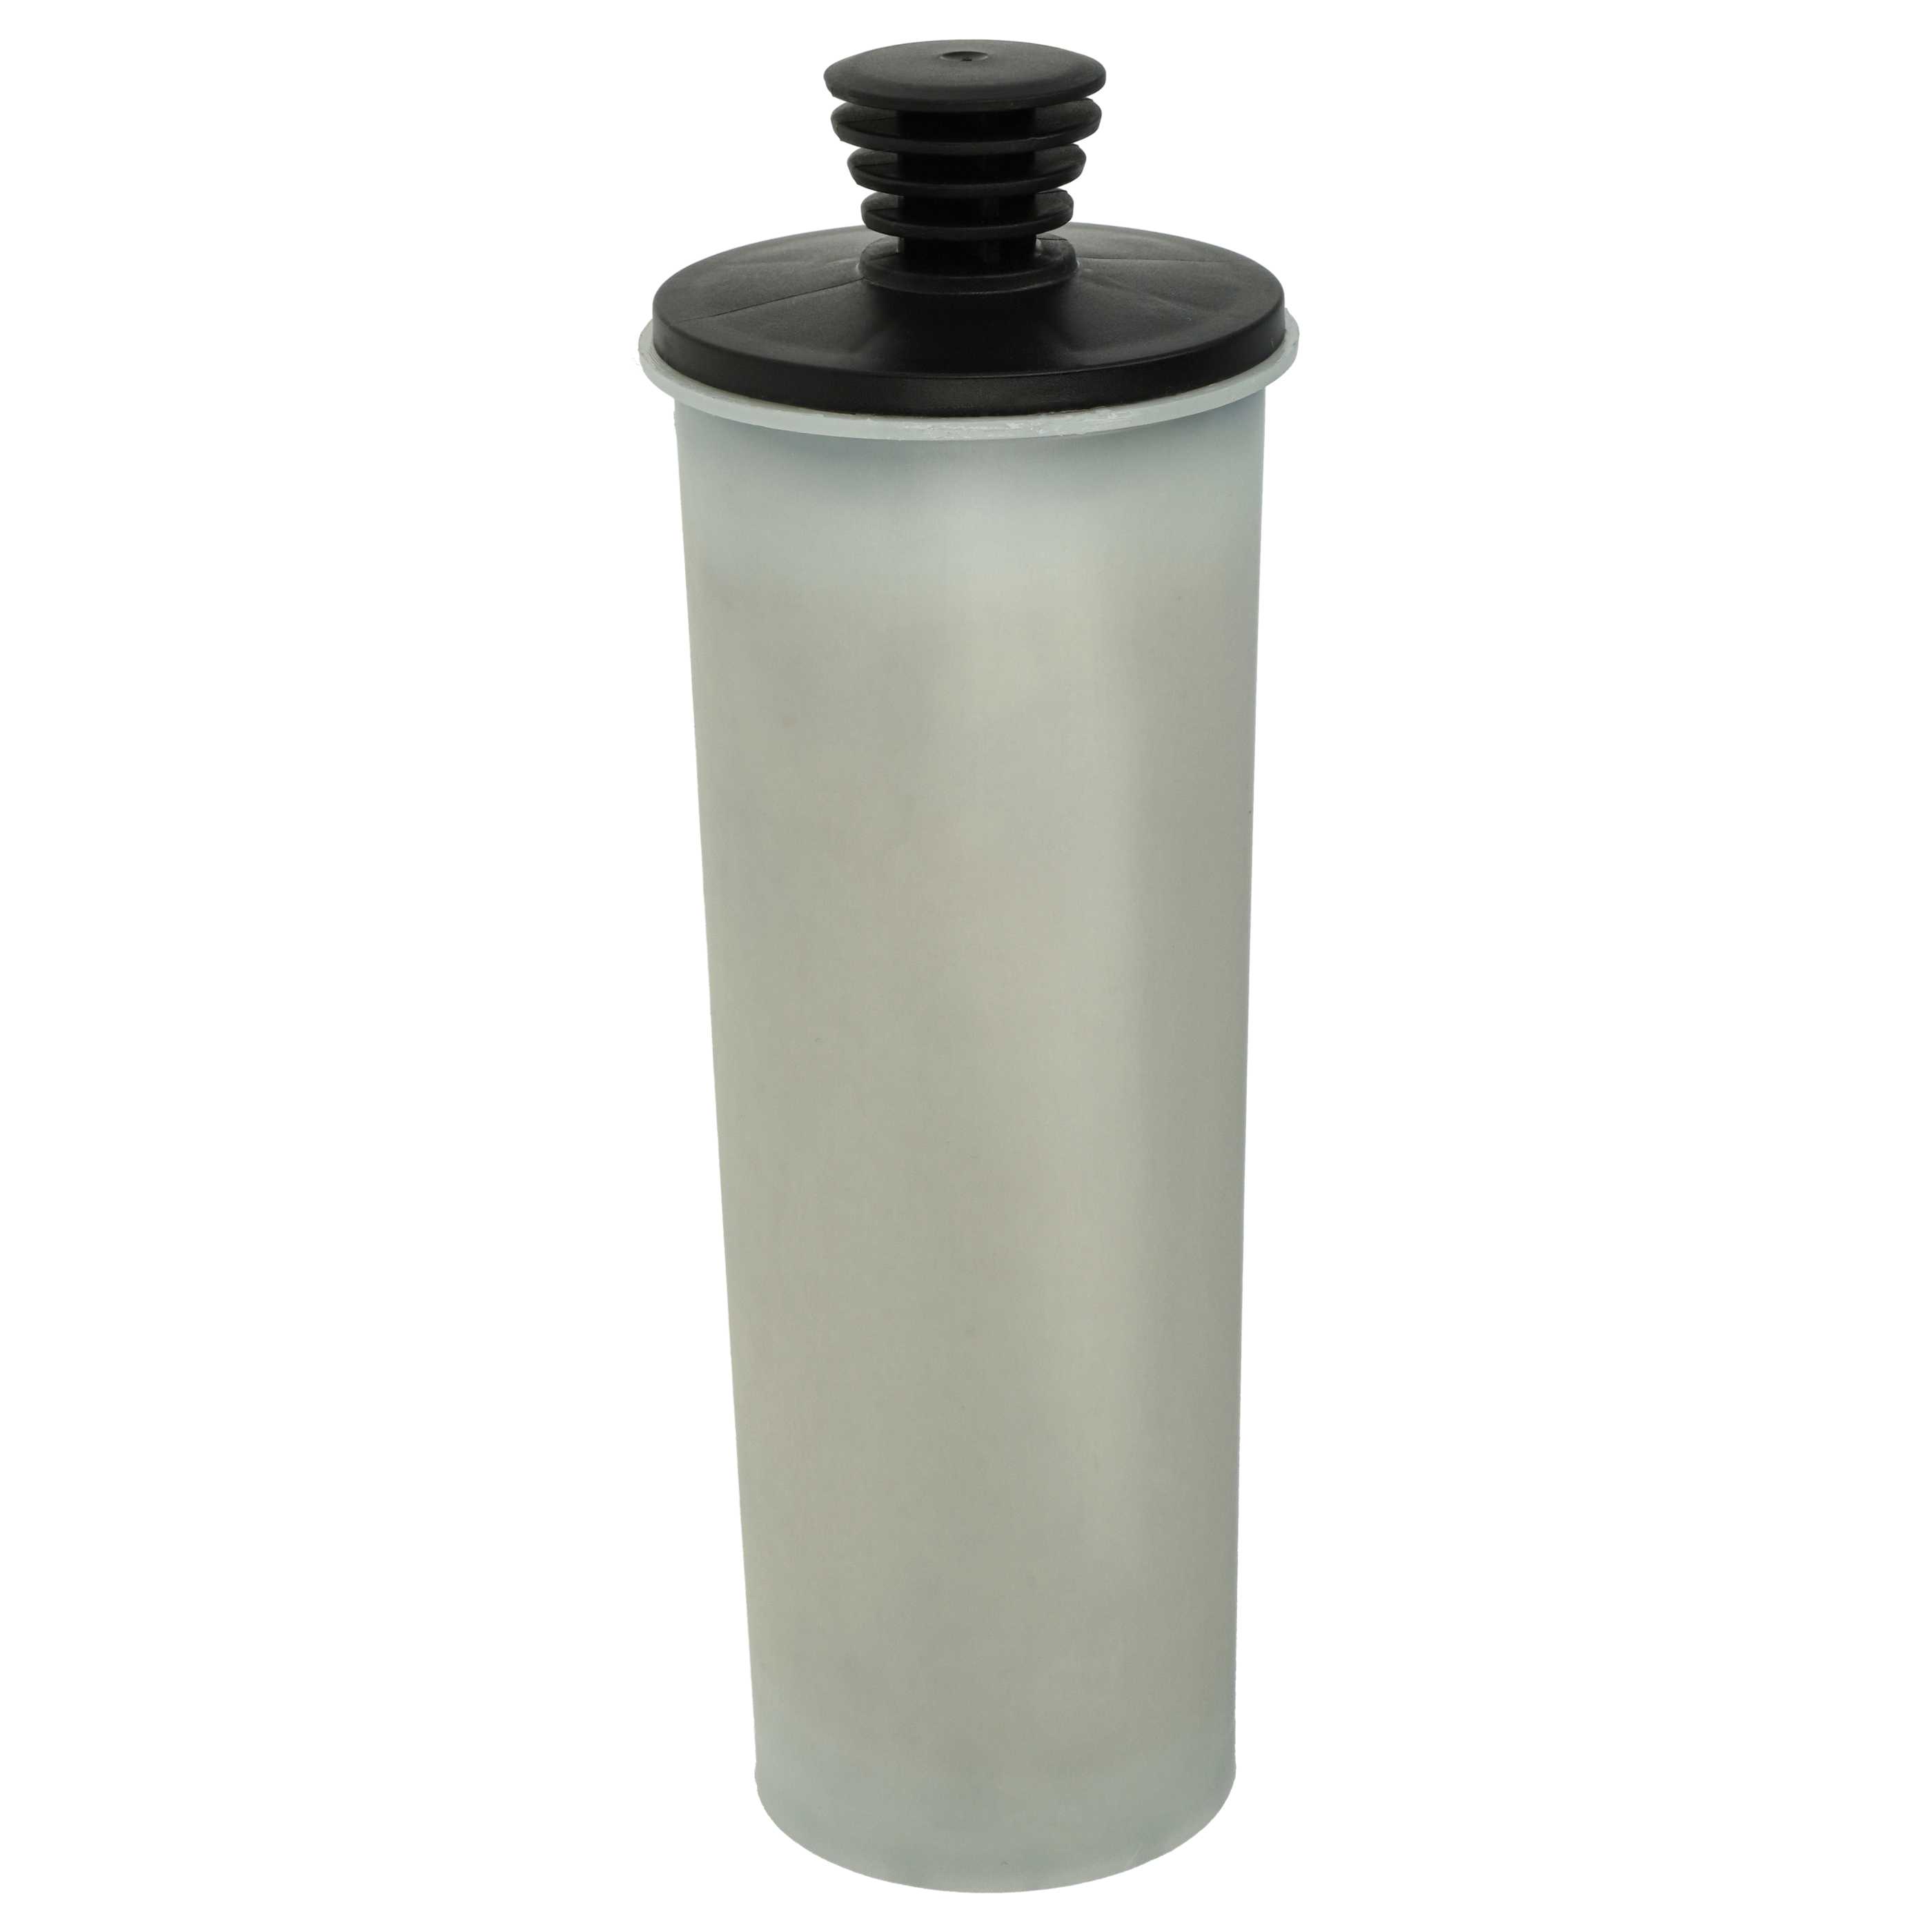 Anti-Kalk Wasserfilter als Ersatz für Kärcher 2.863-018.0 für Kärcher Dampfreiniger